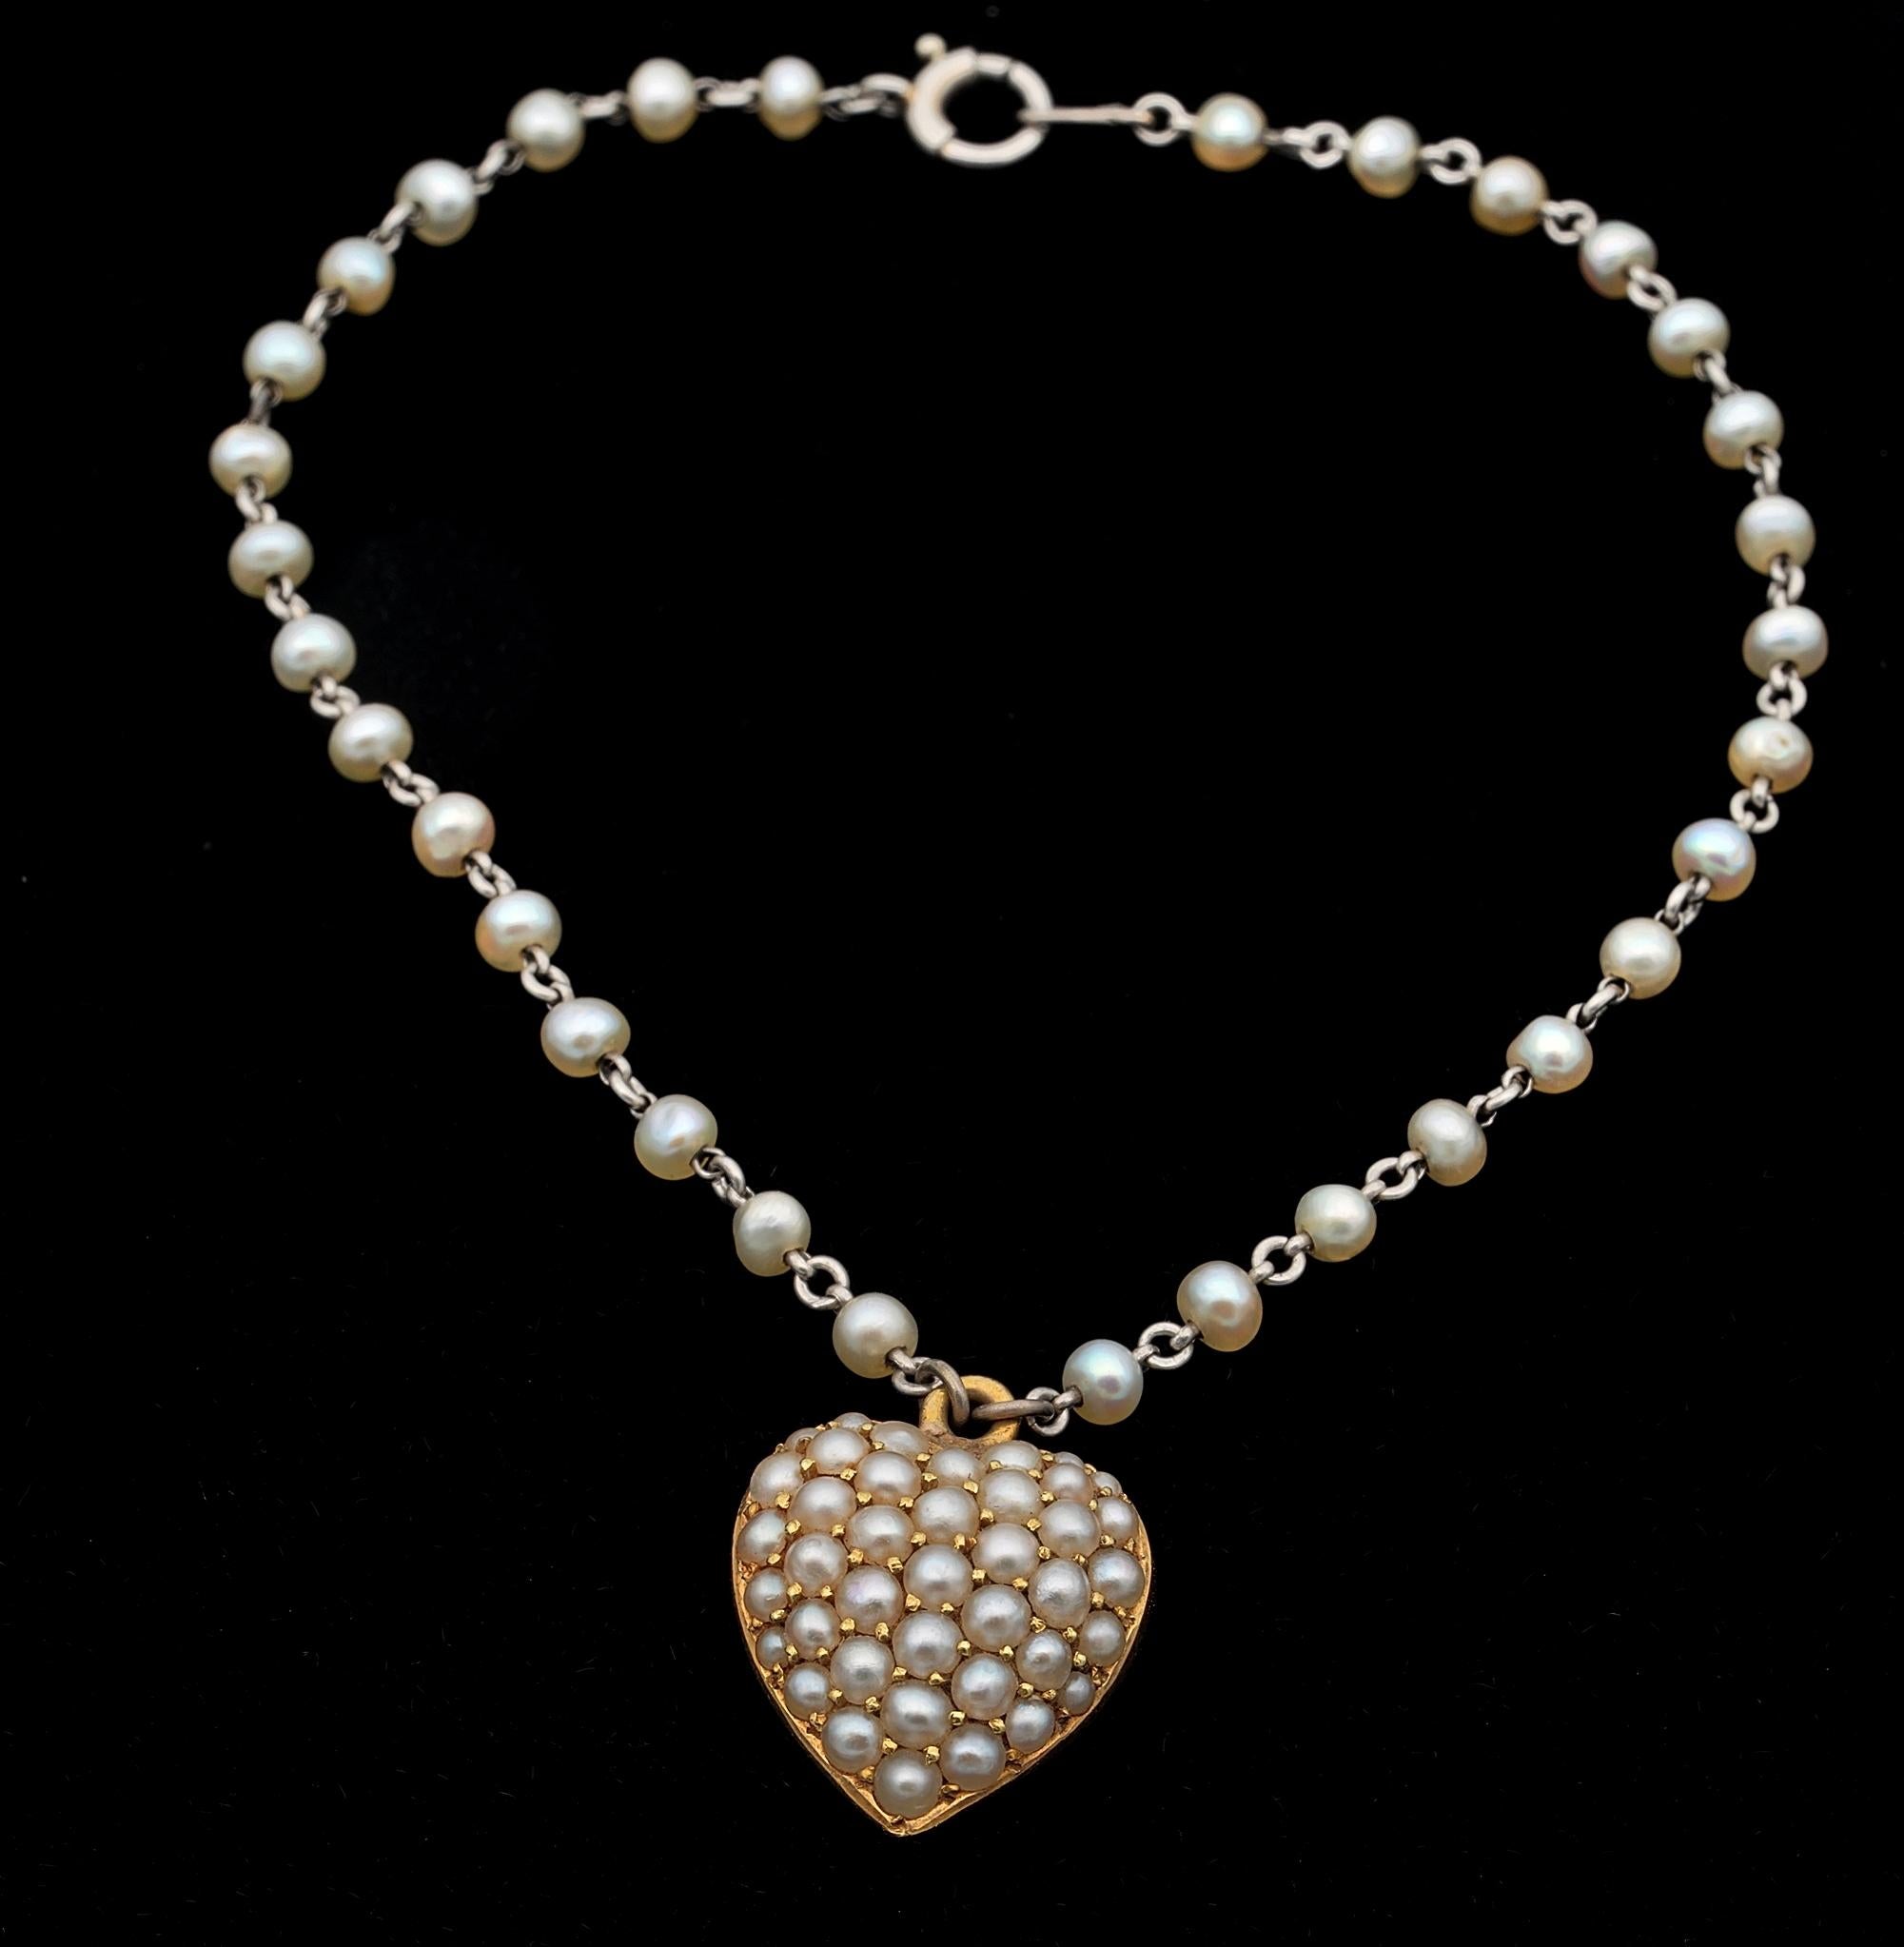 Viktorianische Romantik
Dieses hübsche kleine Armband aus der viktorianischen Ära besteht aus einem süßen Herz aus 15 Karat massivem Gold - markiert - das an einer Platin-Kette hängt, die von natürlichen Perlen unterbrochen wird.
Das süße Herz ist